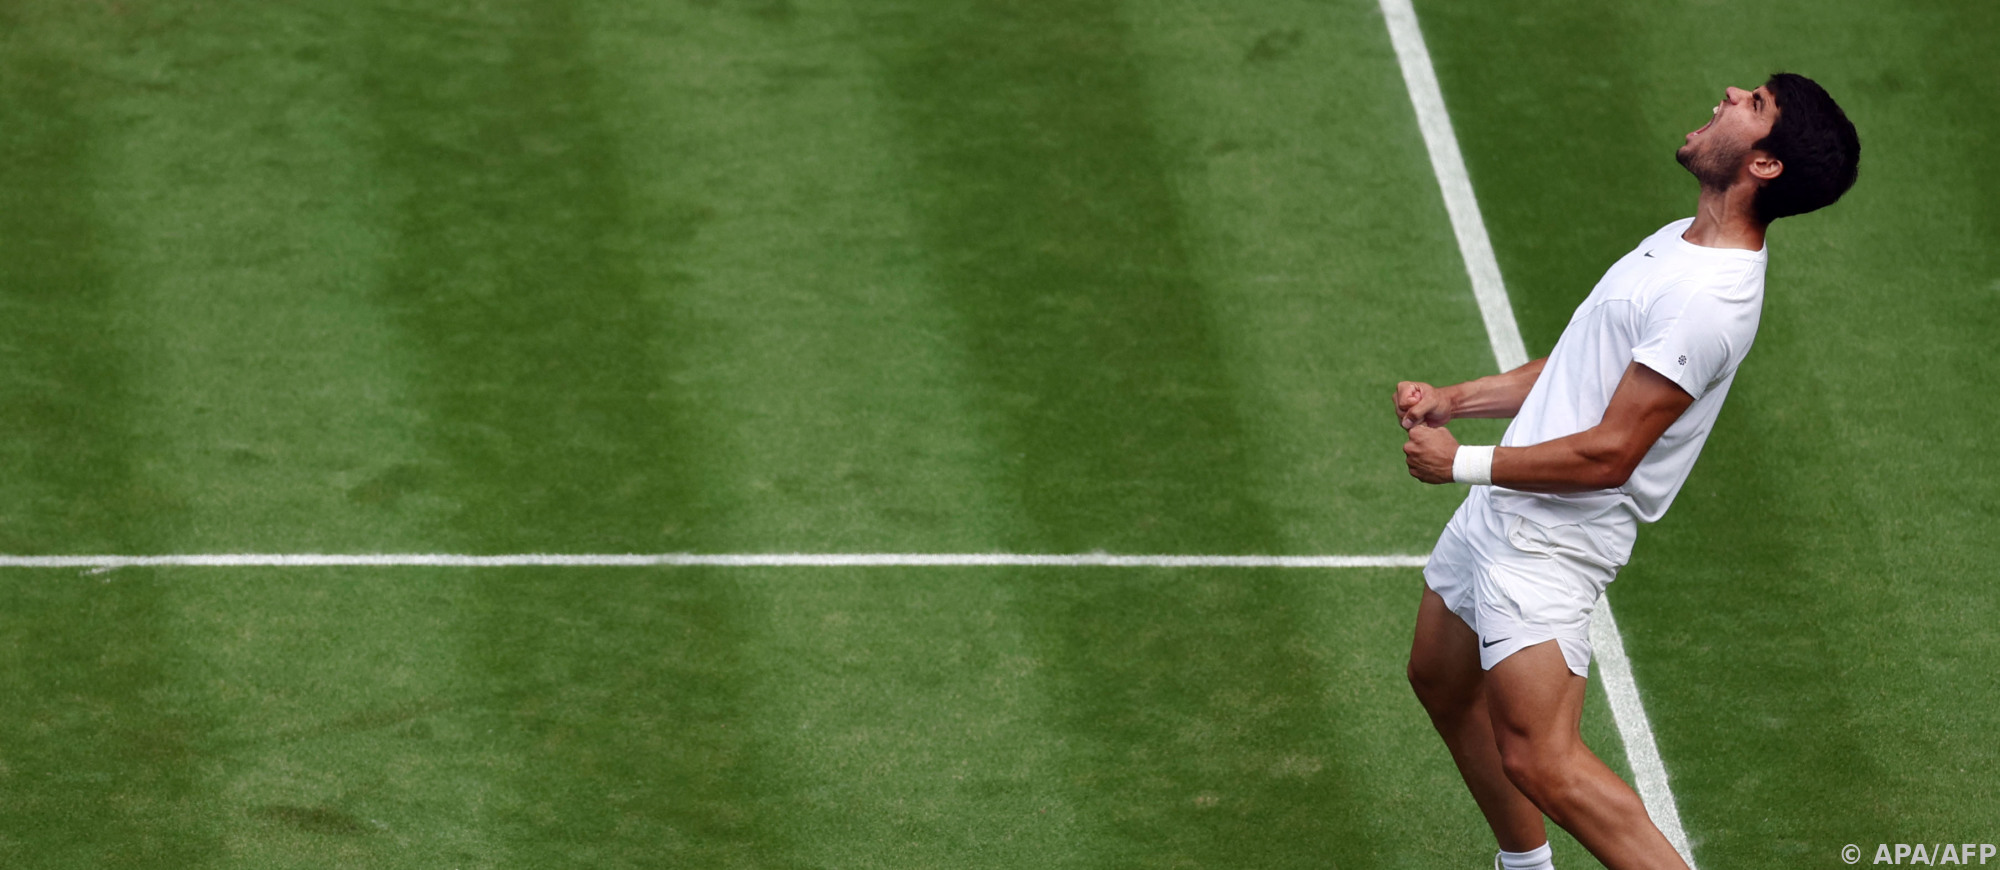 Alcaraz und Medwedew erstmals im Wimbledon-Halbfinale